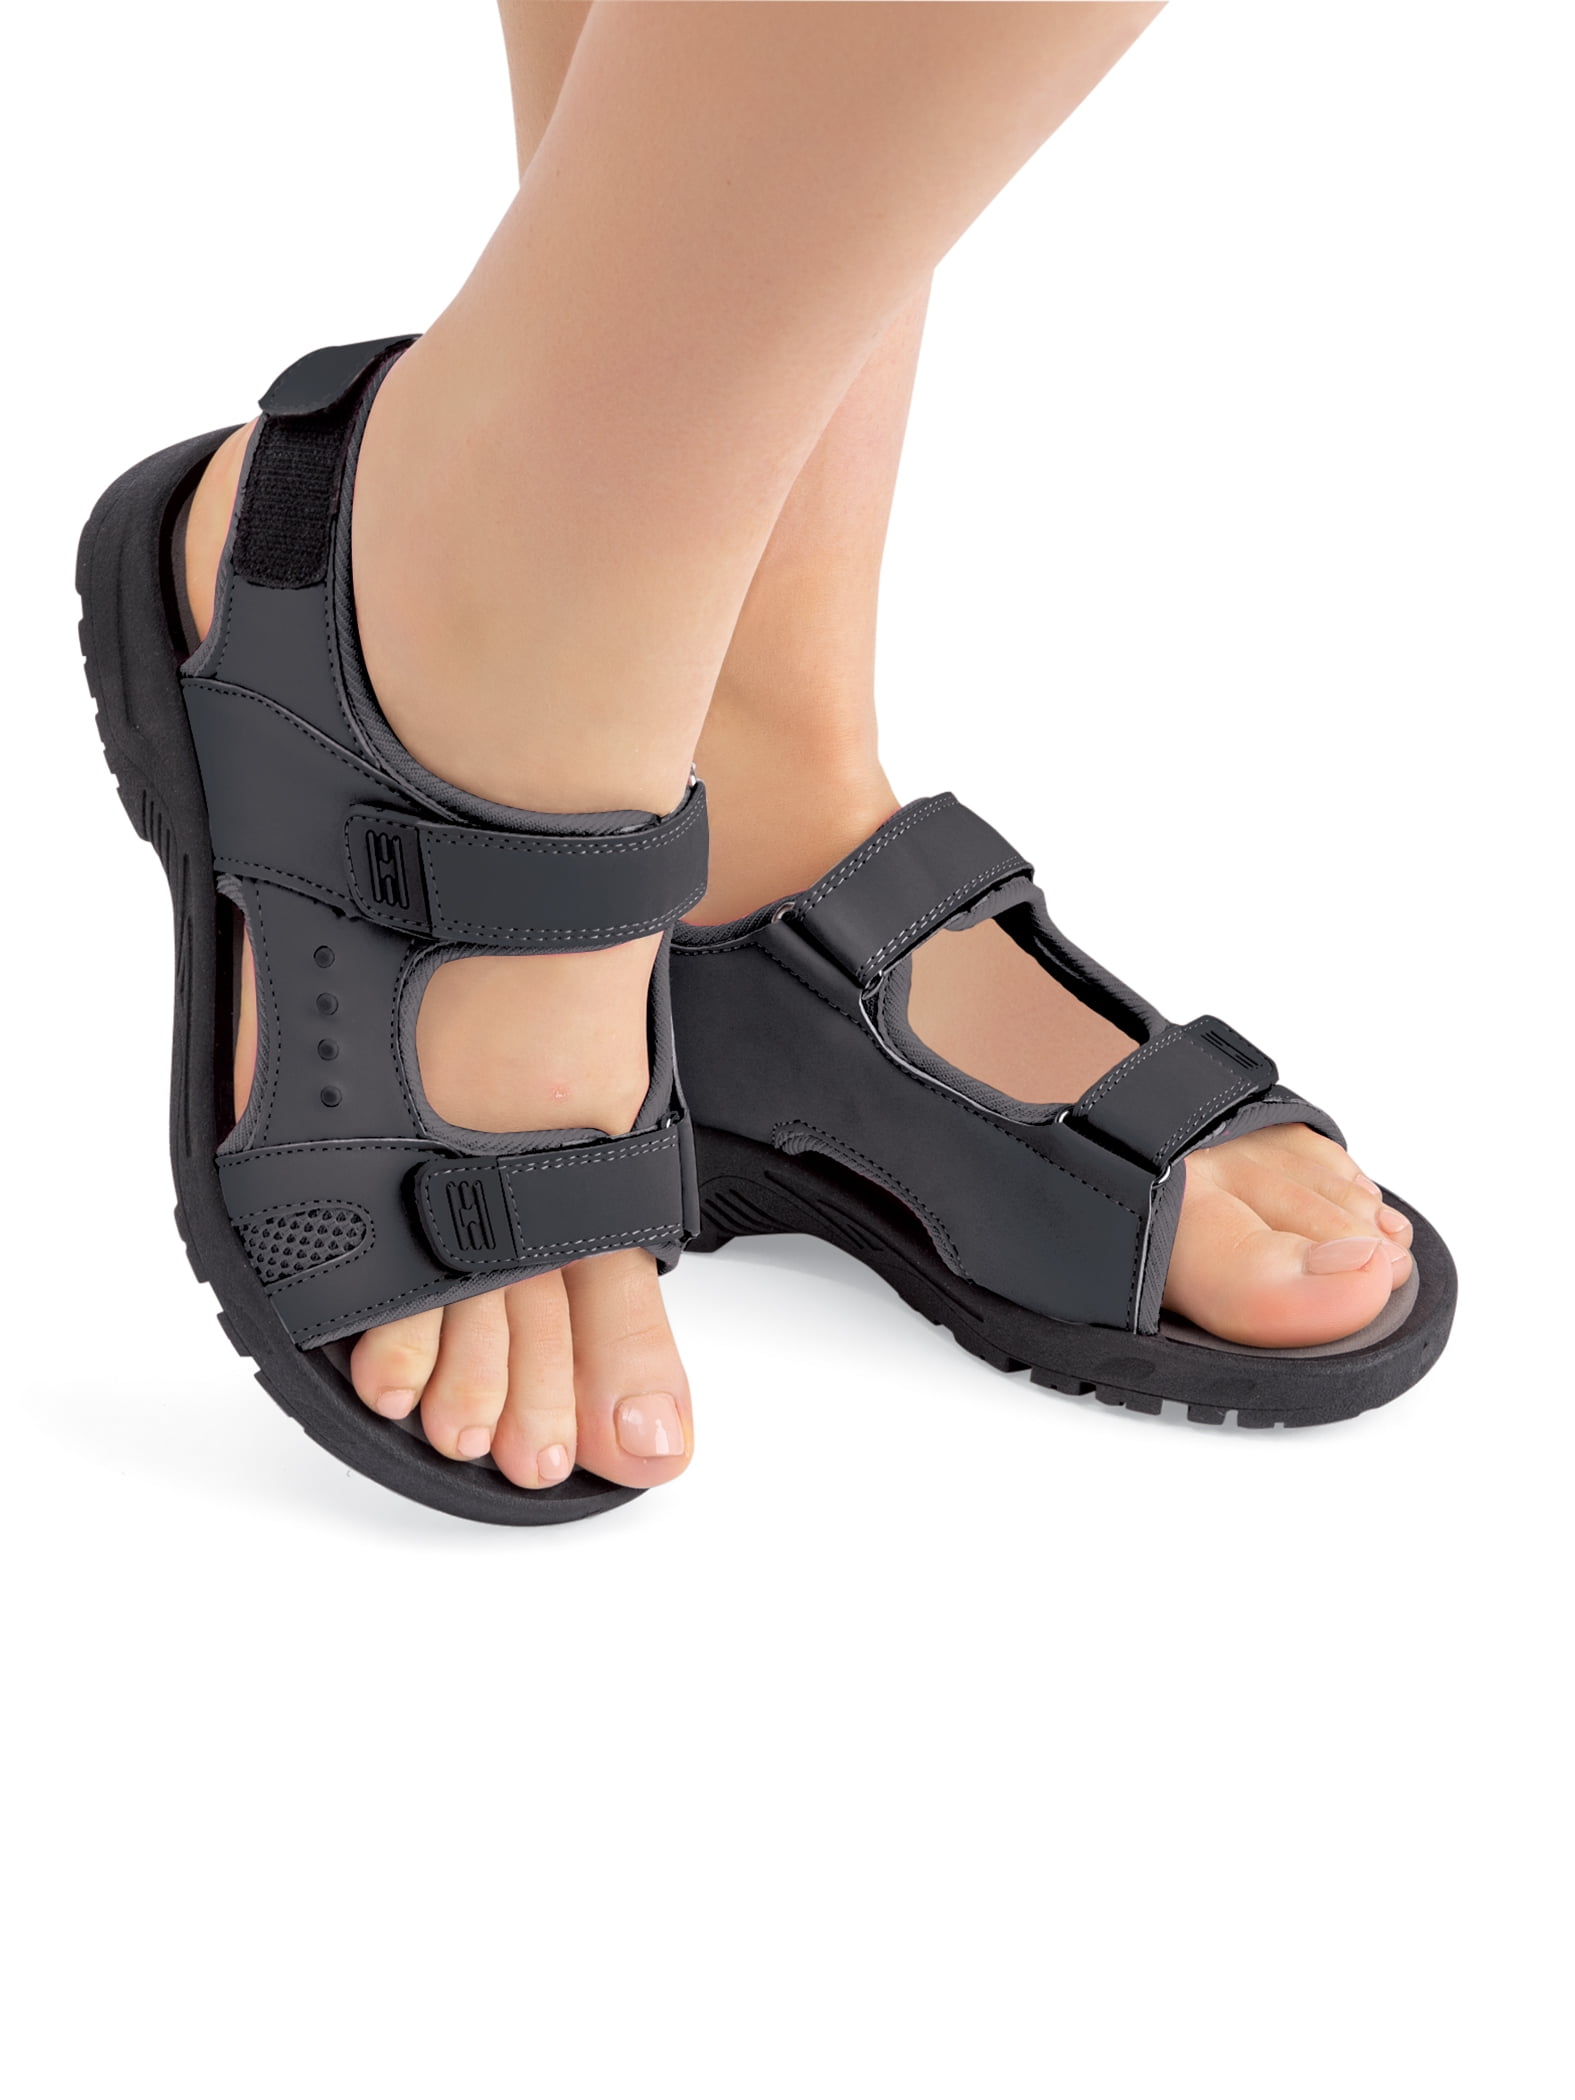 better-caress Women Flat Sandals Rubber Feminina Belt Shoes Pu Leather Comfort,White A,6.5